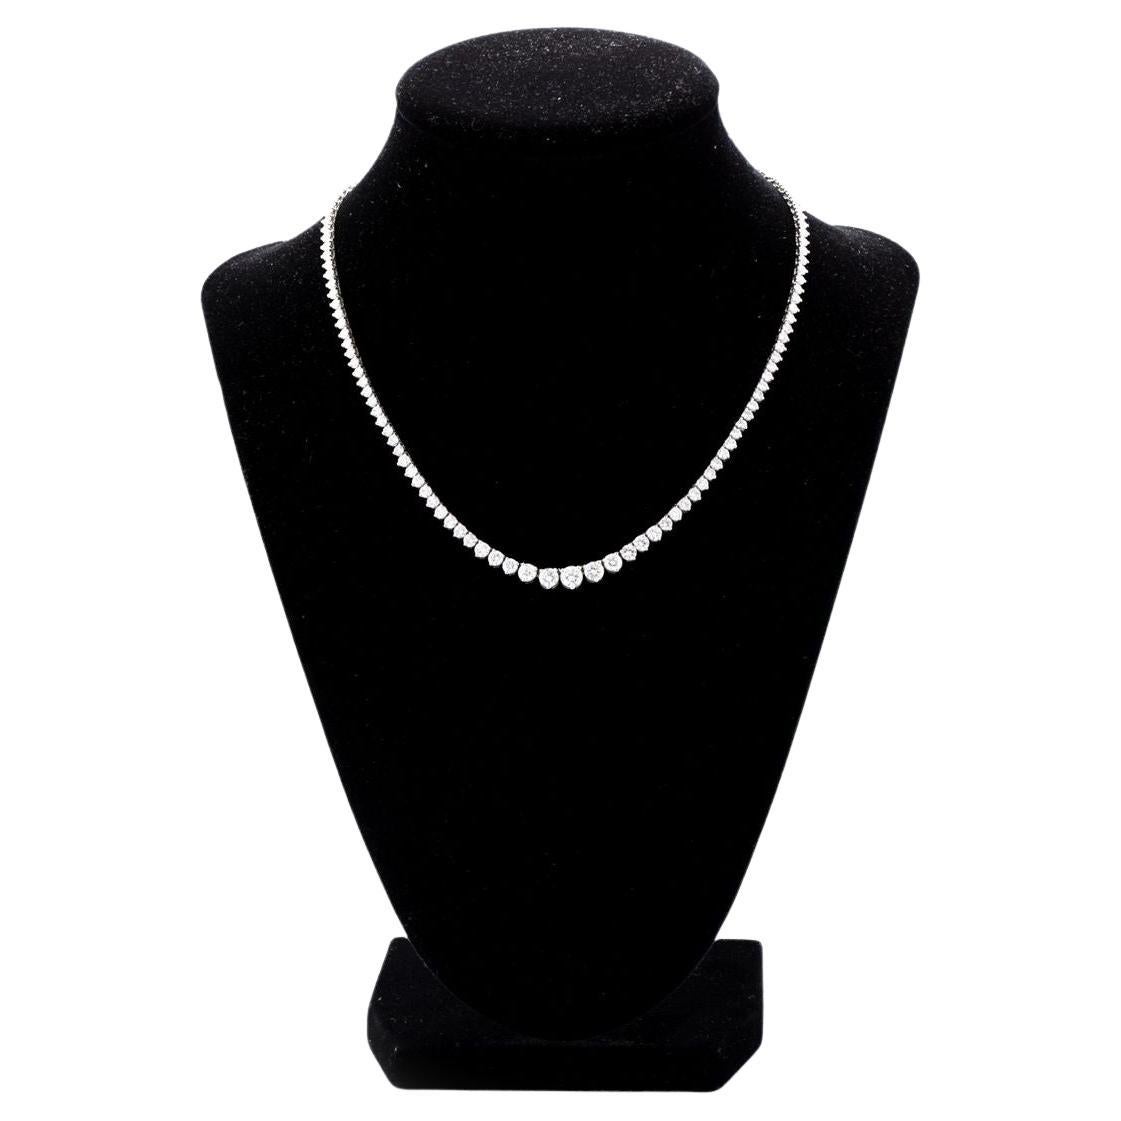 12.19 carat Platinum Elegant Graduated Diamond Tennis Necklace